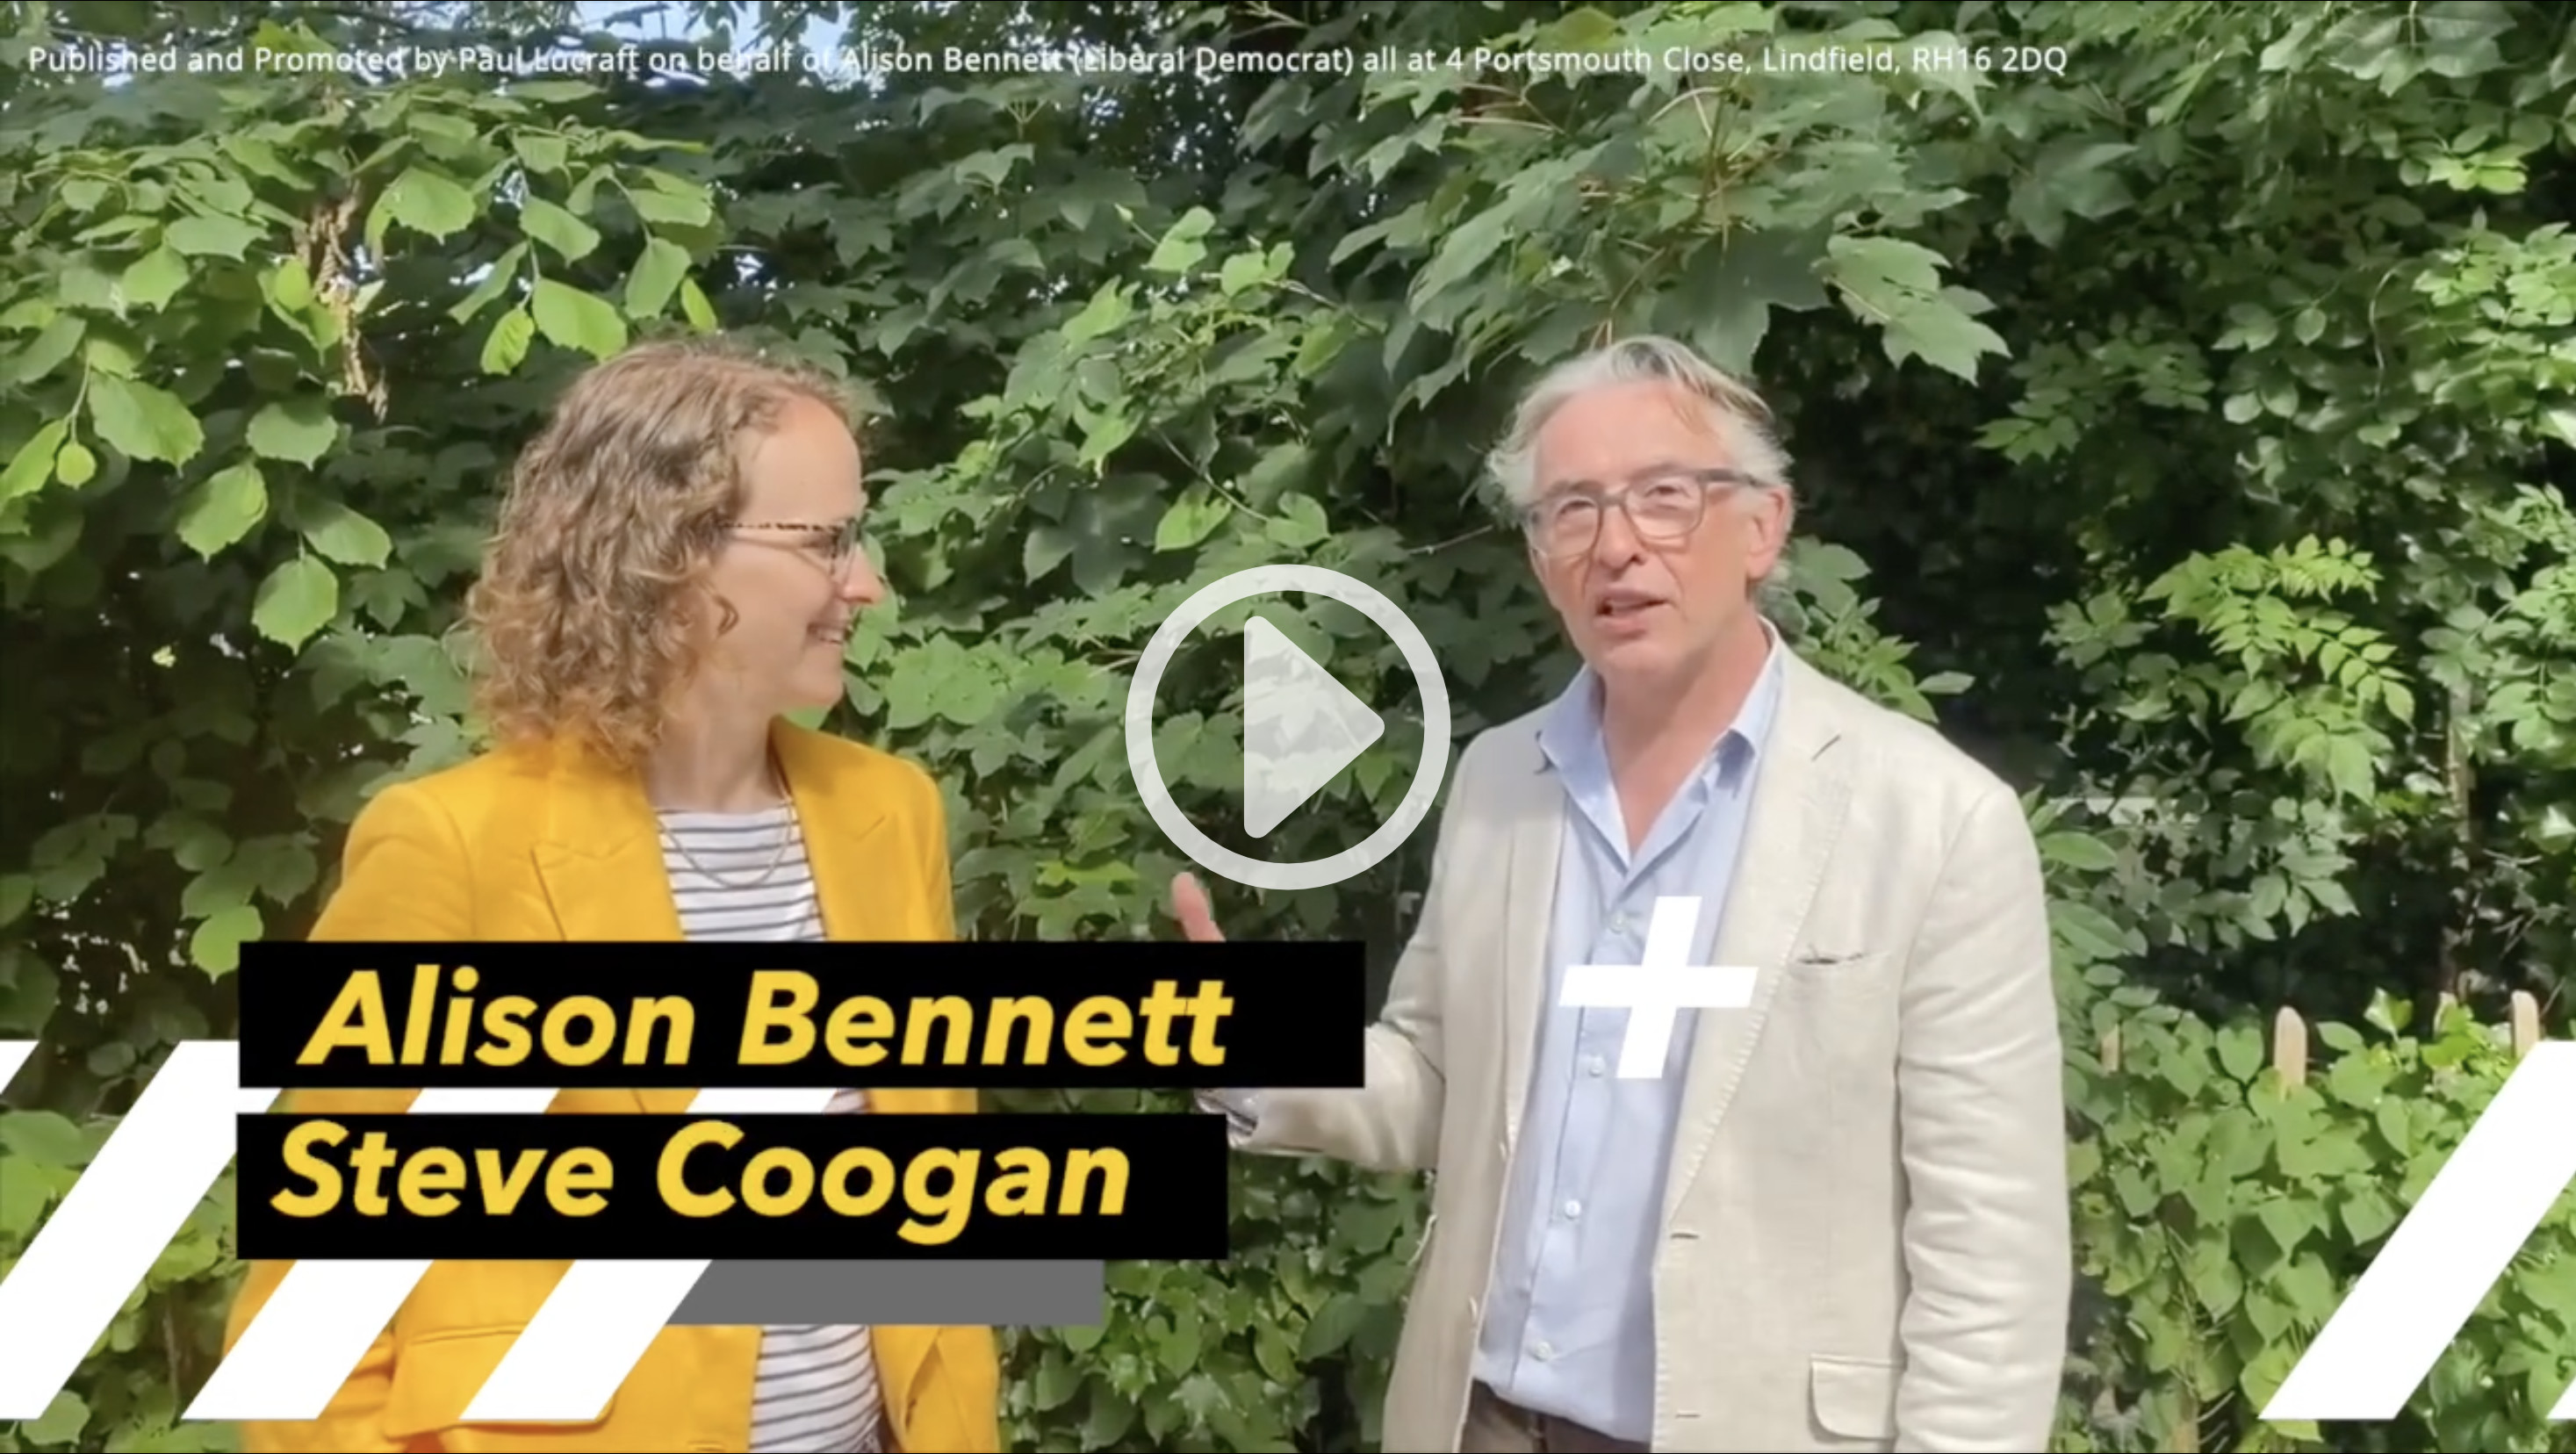 Steve Coogan, from StopTheTories, endorses Alison Bennett